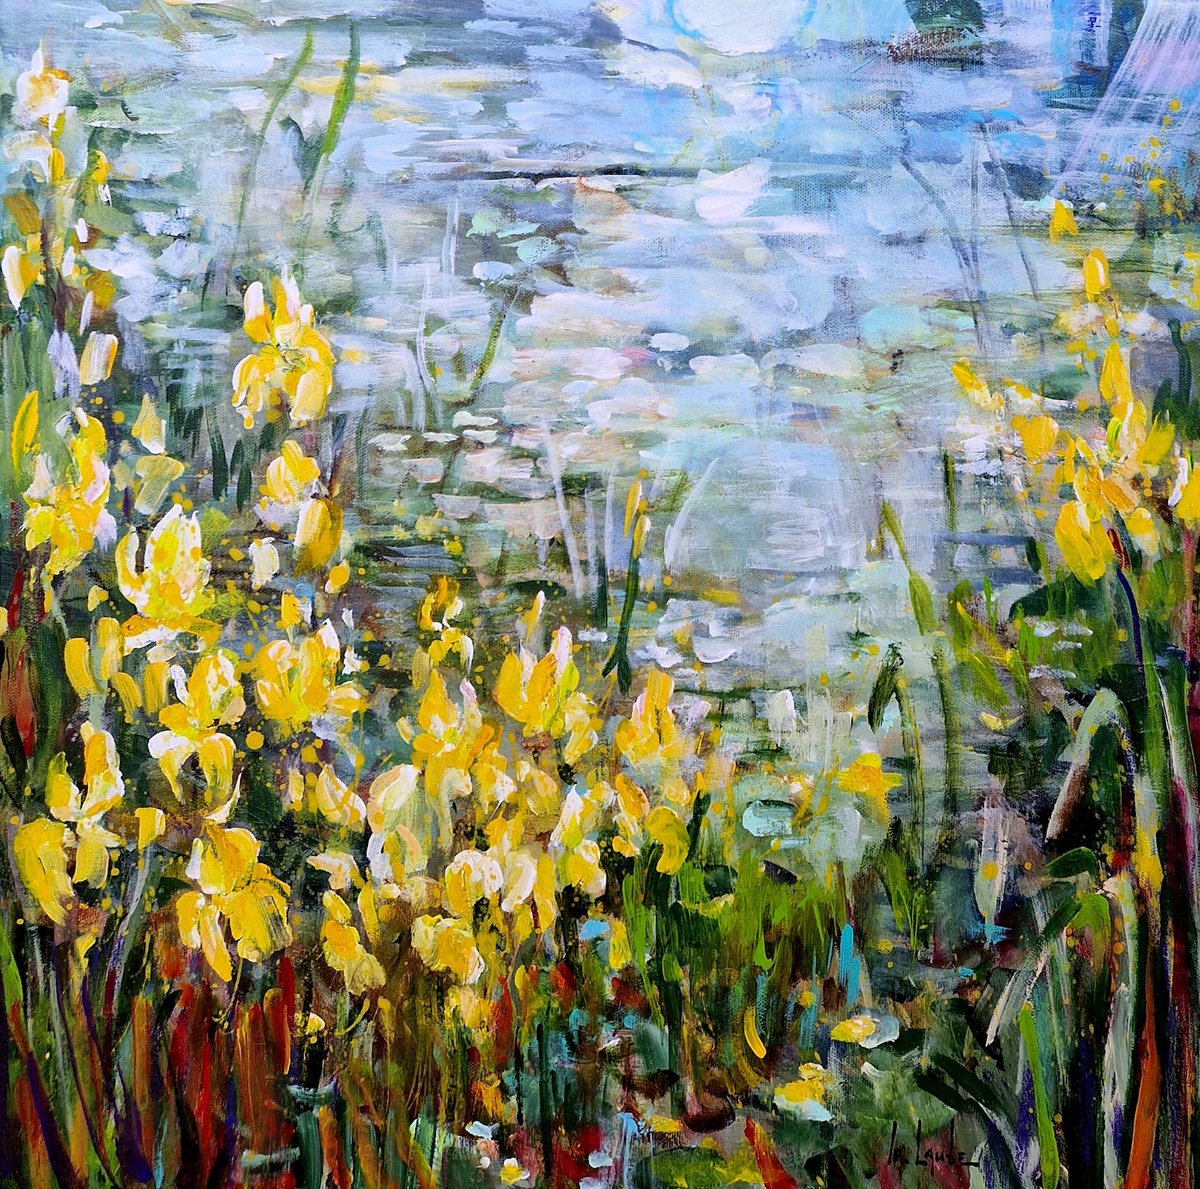 Yellow irises at the pond by Irina Laube